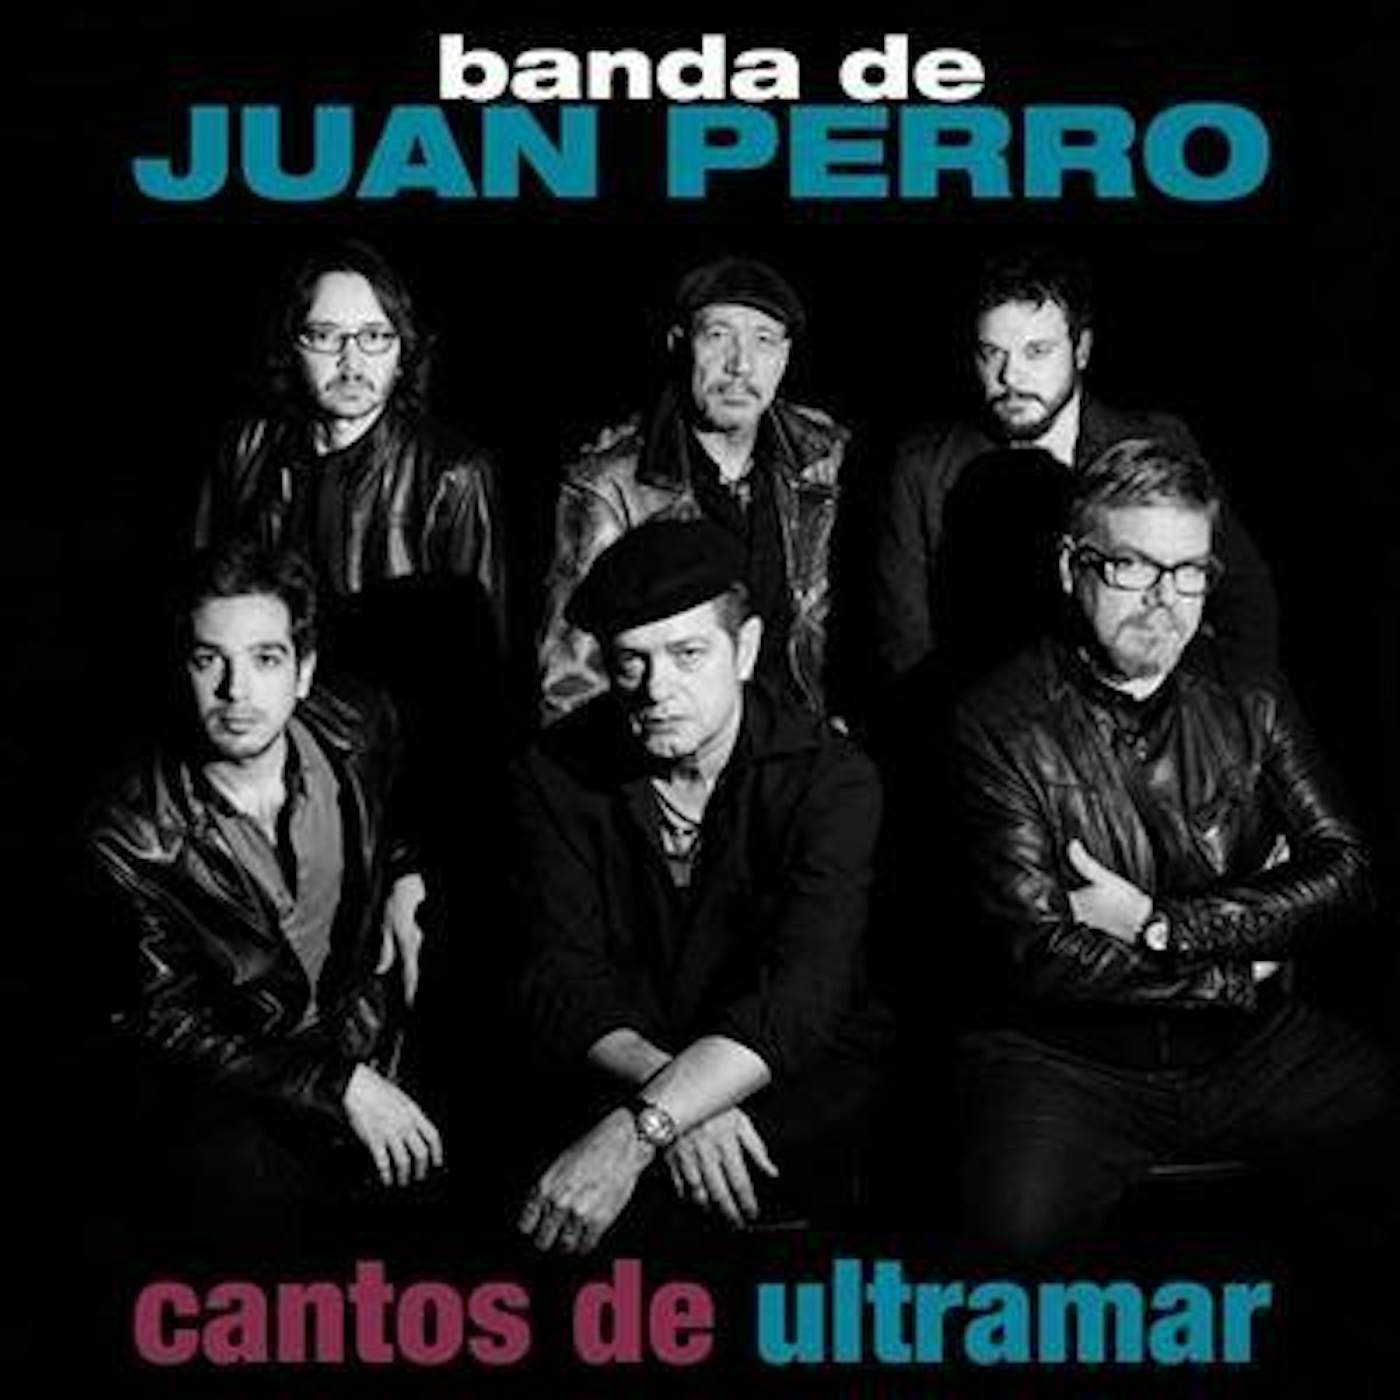 Juan Perro Cantos de ultramar Vinyl Record